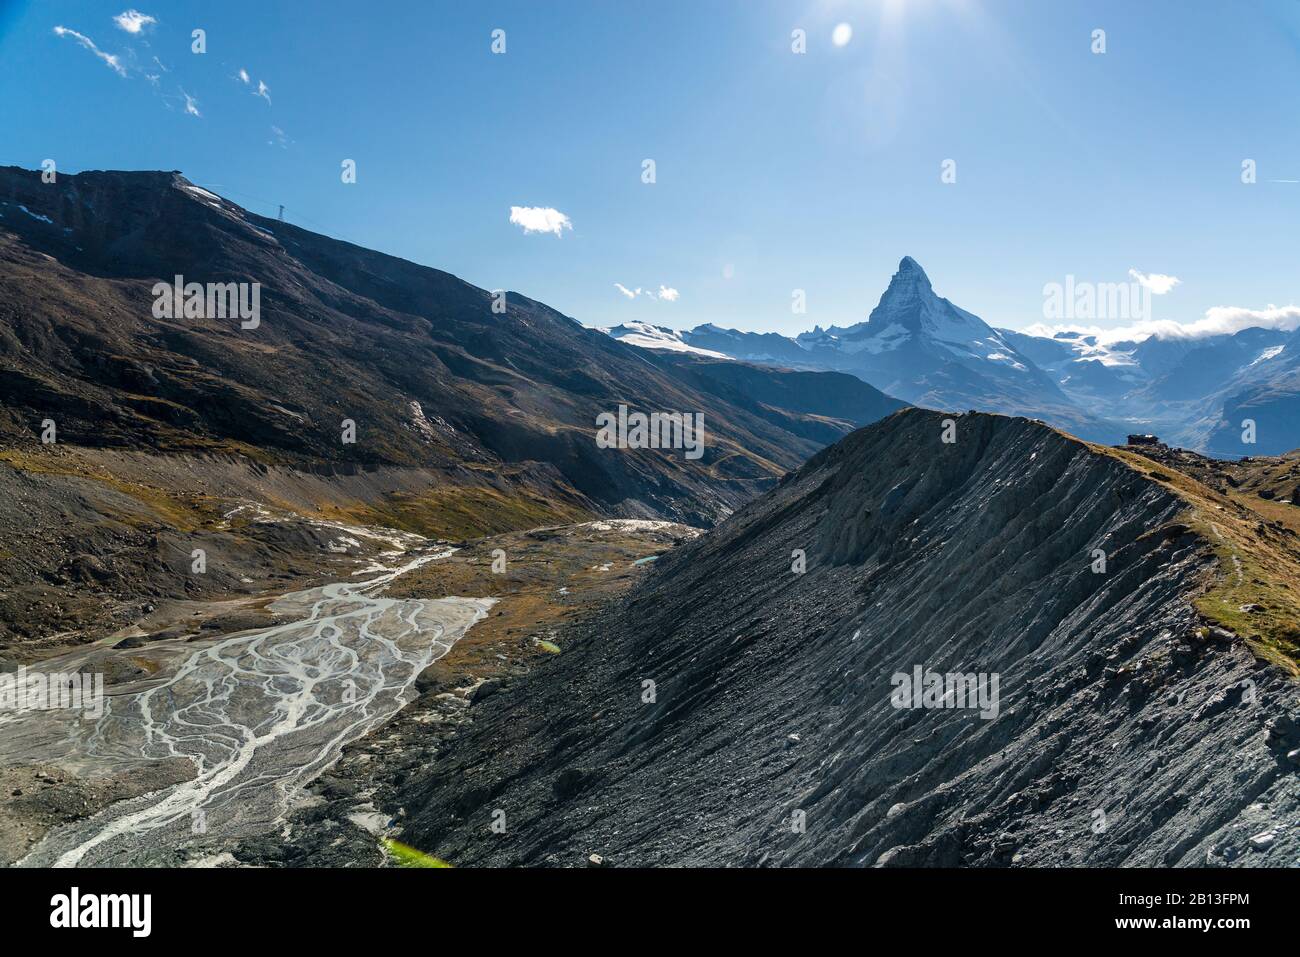 View over the Fluhalp to the Matterhorn,Zermatt,Switzerland Stock Photo